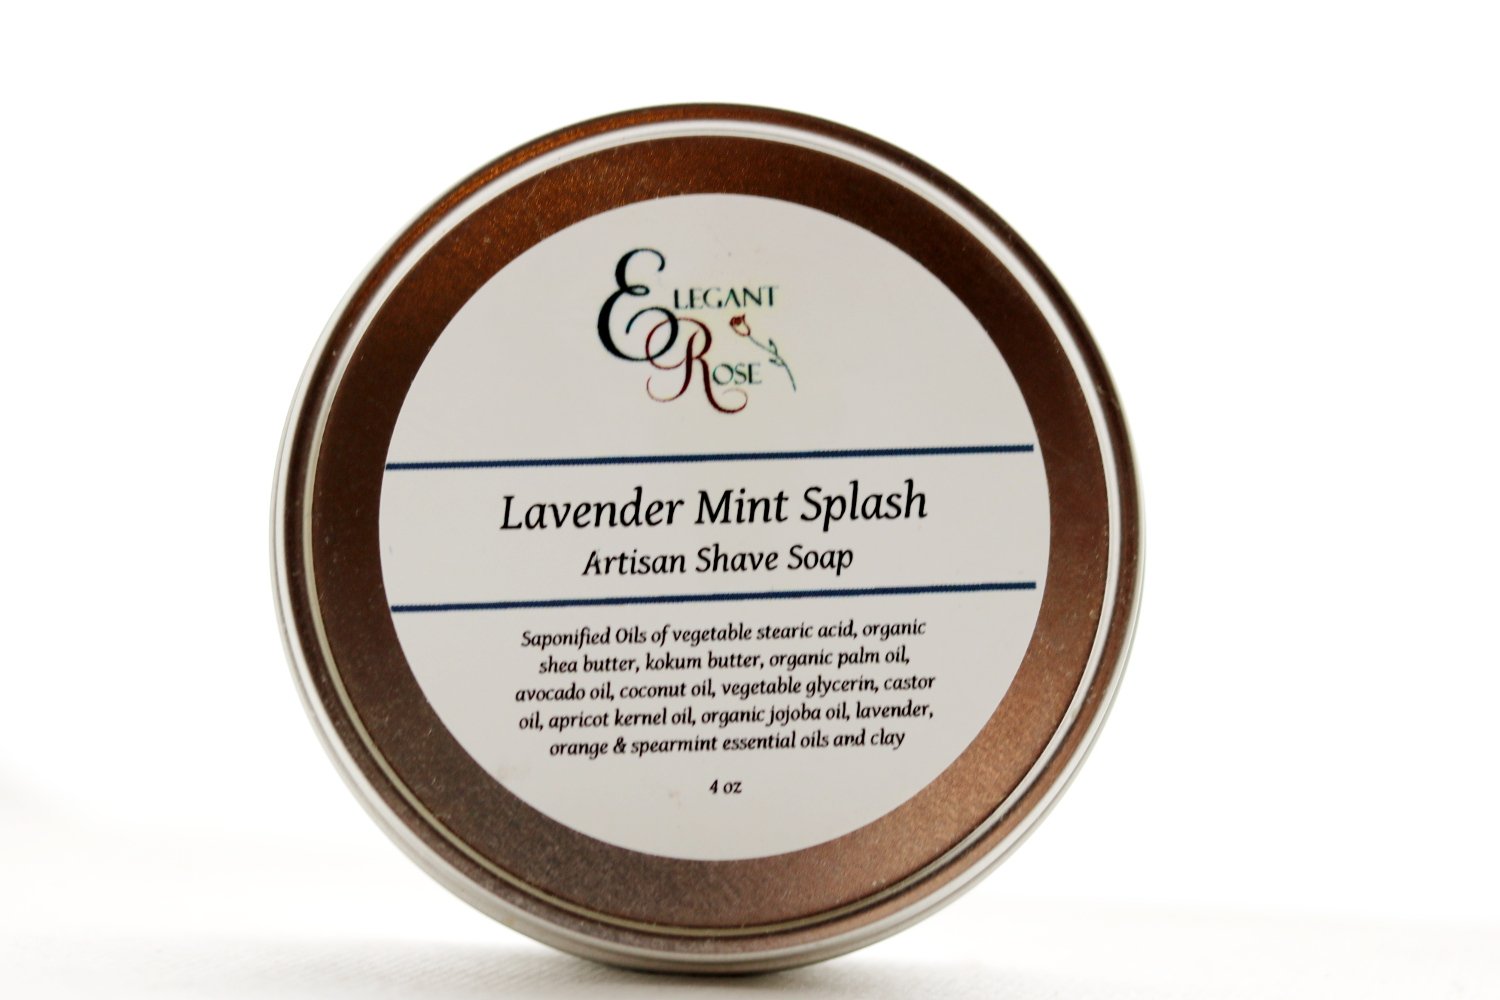 Lavender Mint Splash Artisan Shave Soap, Natural